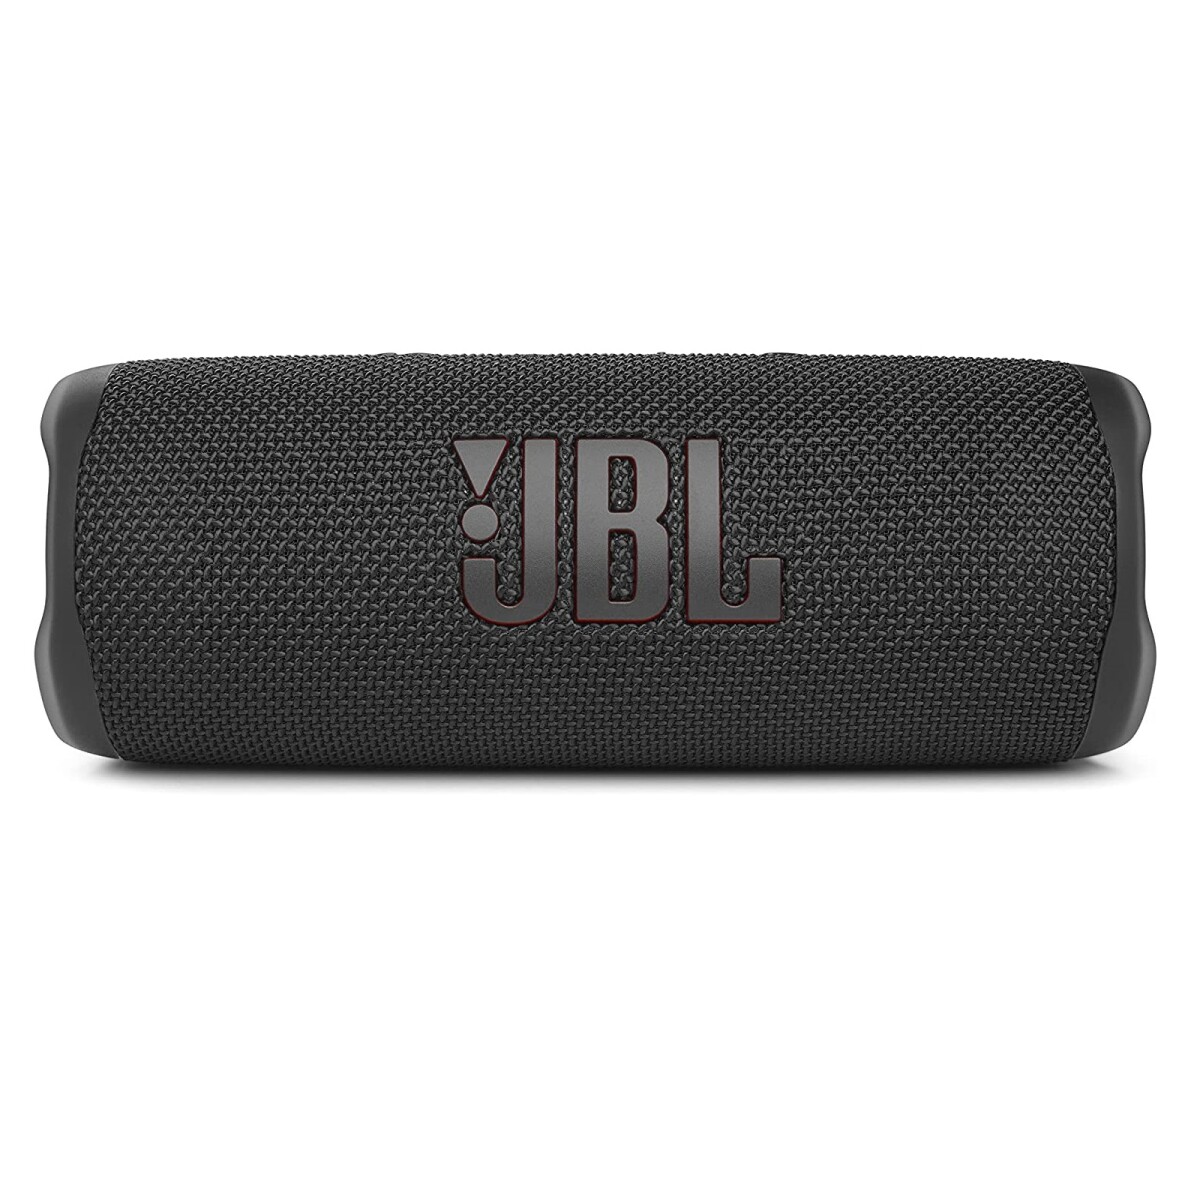 Parlante Jbl Flip 6 Portátil Bluetooth Potencia 20w Amv 